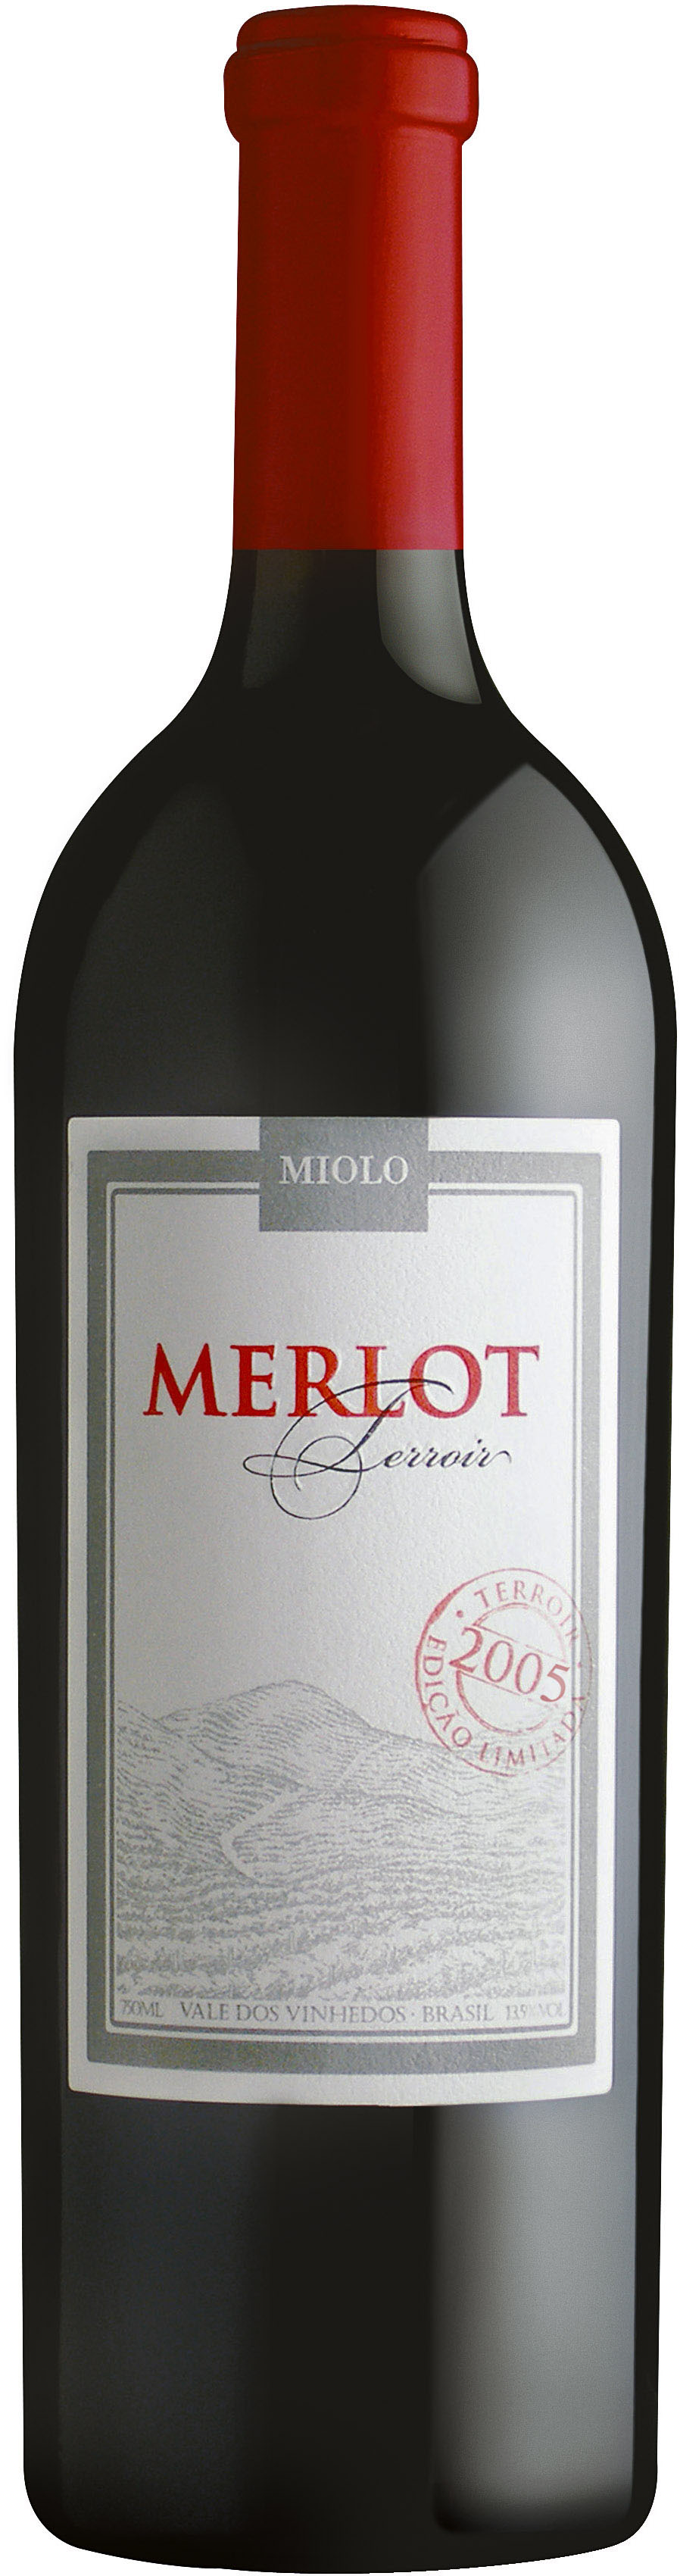 merlot-terroir-2005